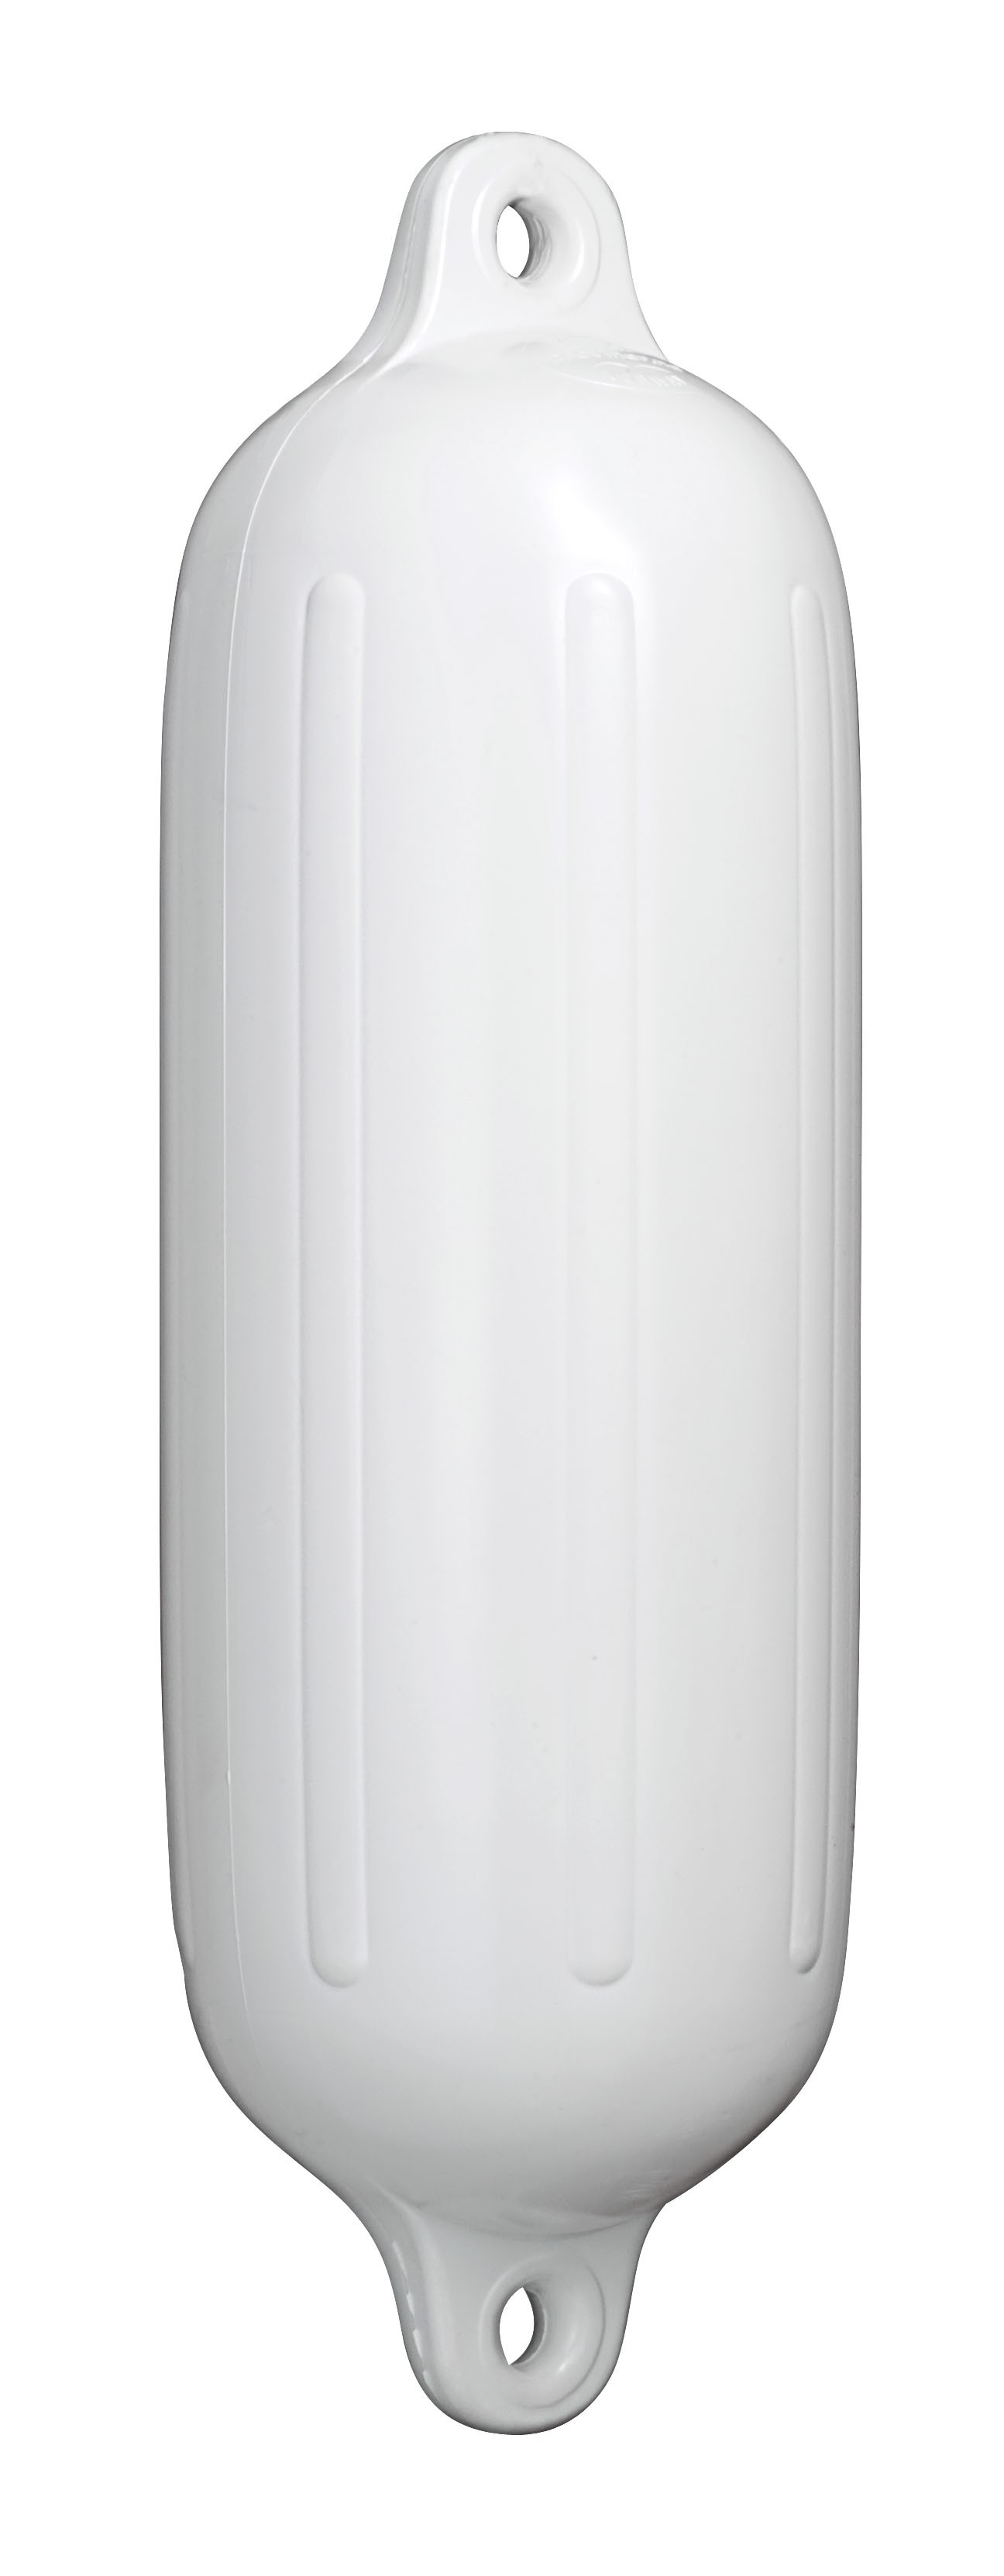 38.7 - Μπαλόνι POLYFORM Με Διπλό Μάτι Σειρά G Χρώματος Λευκού 21.5x70.5cm